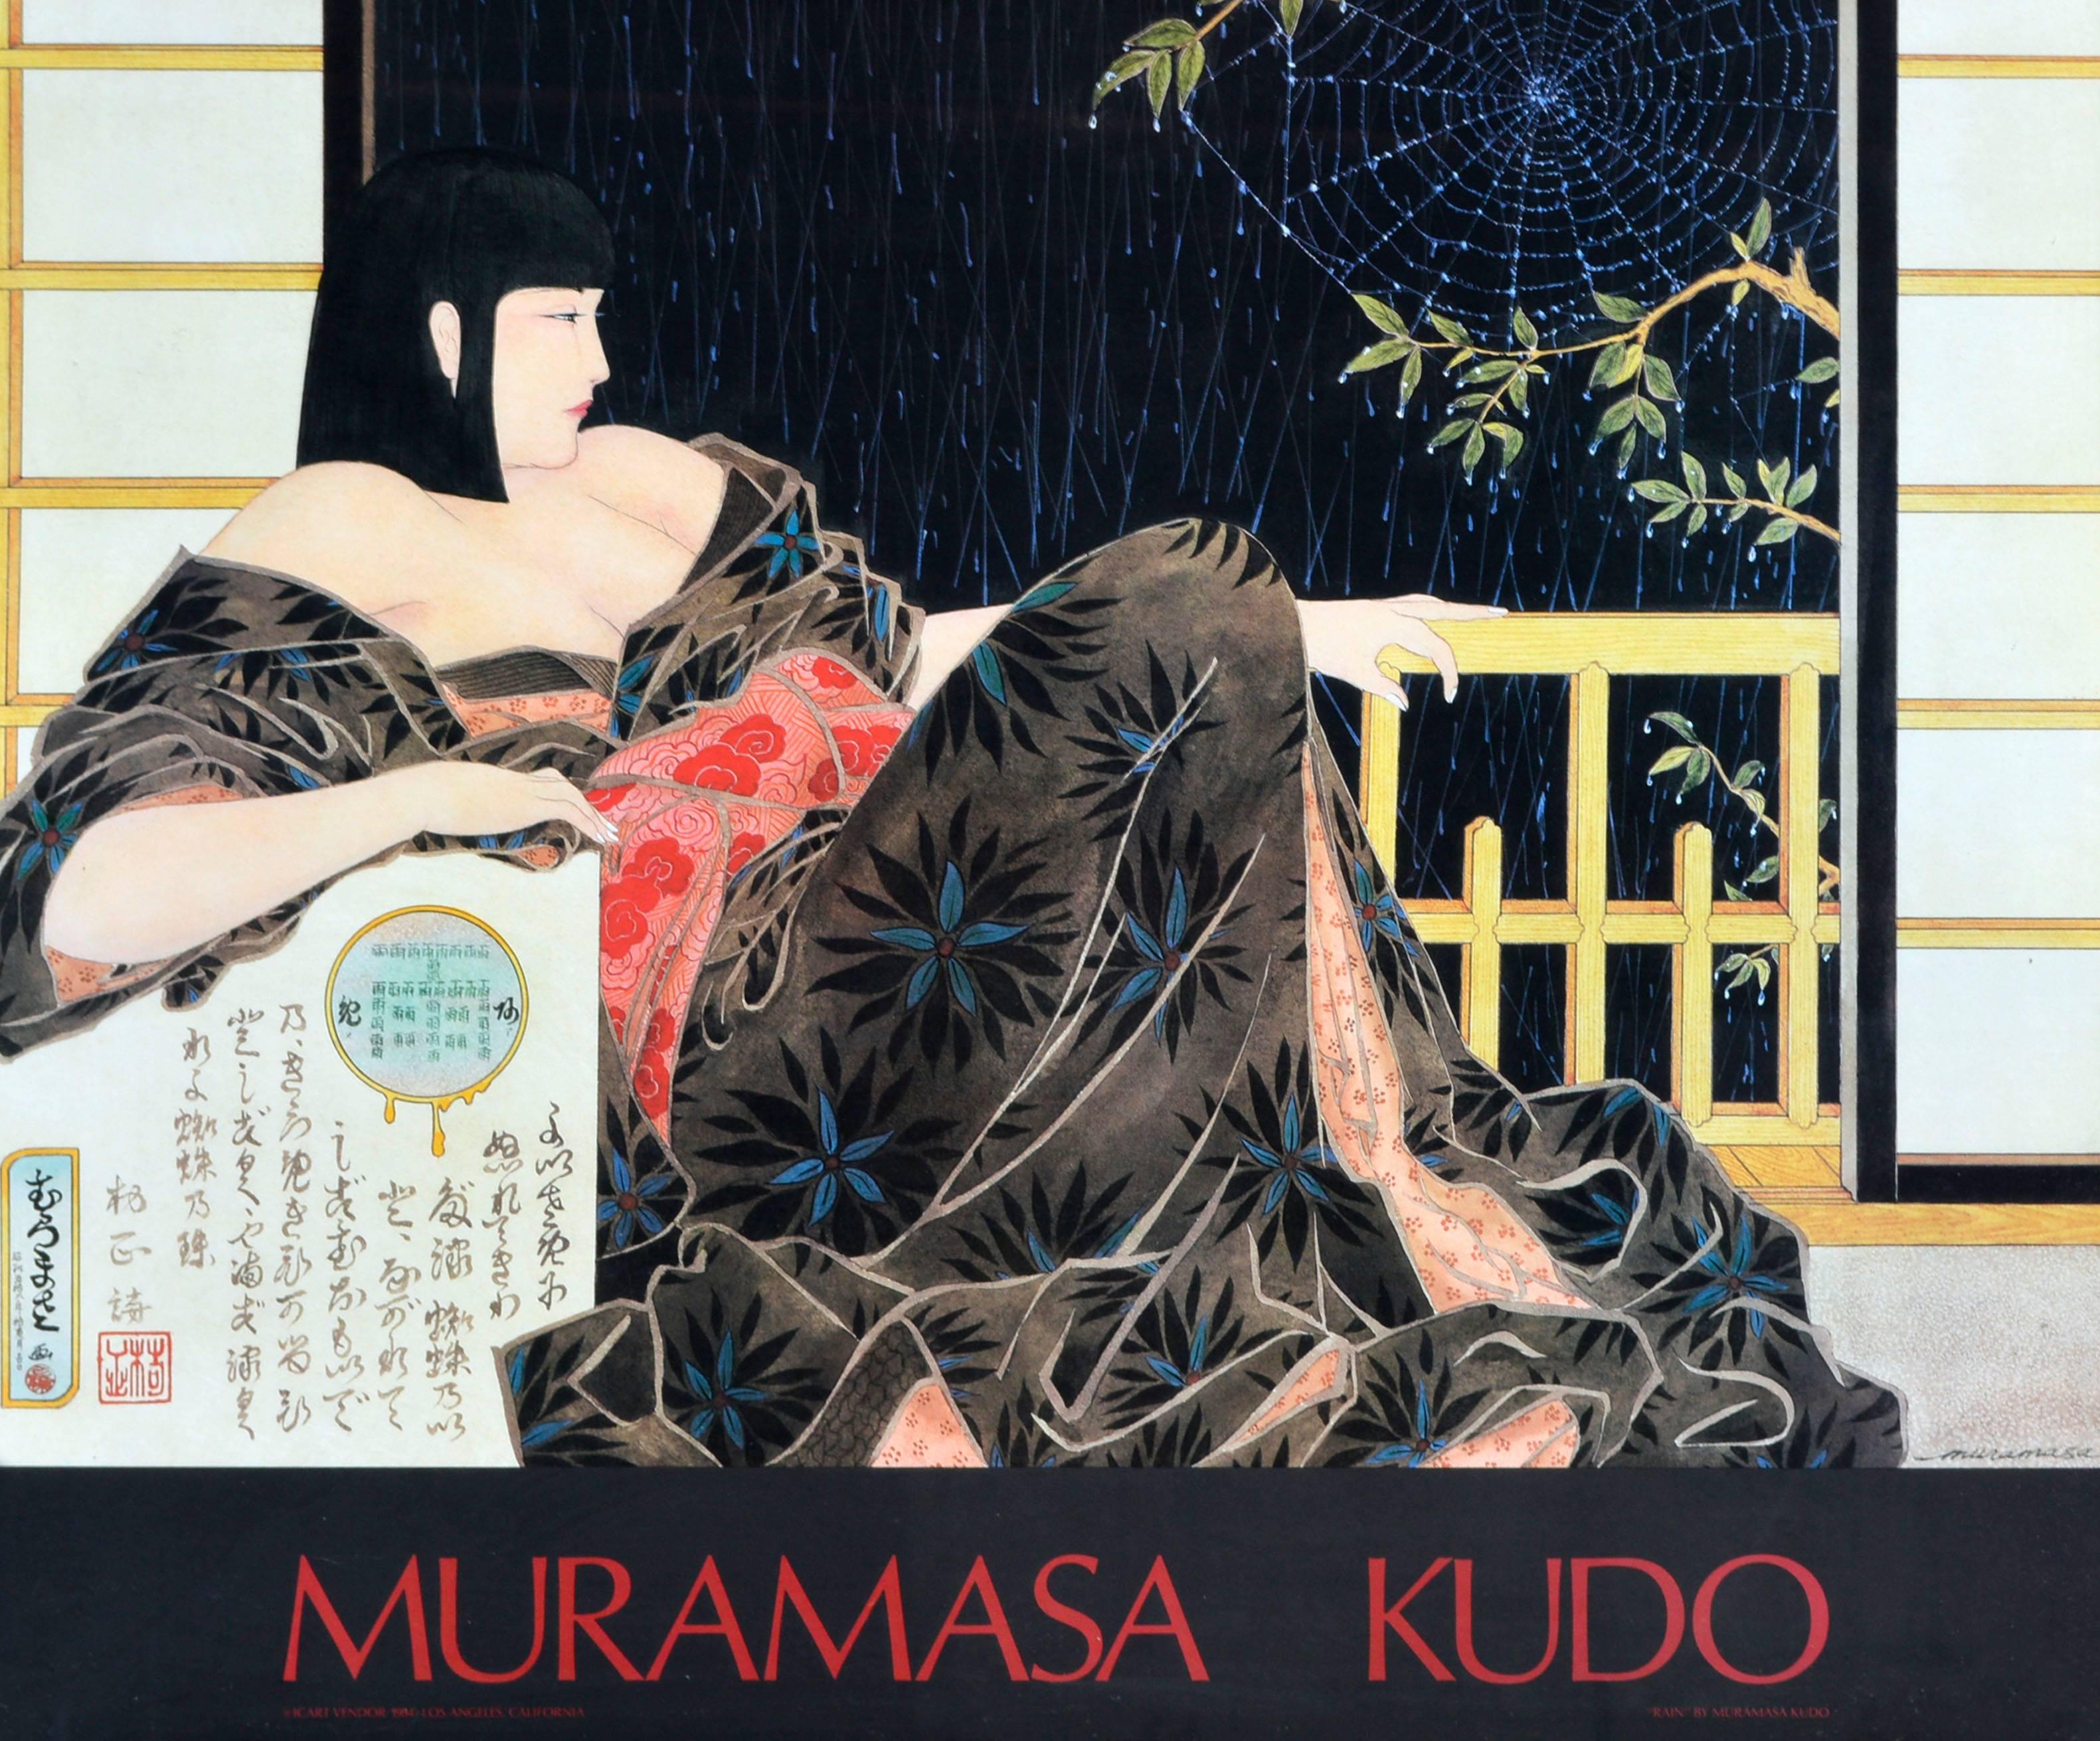 Rain - Print by Muramasa Kudo